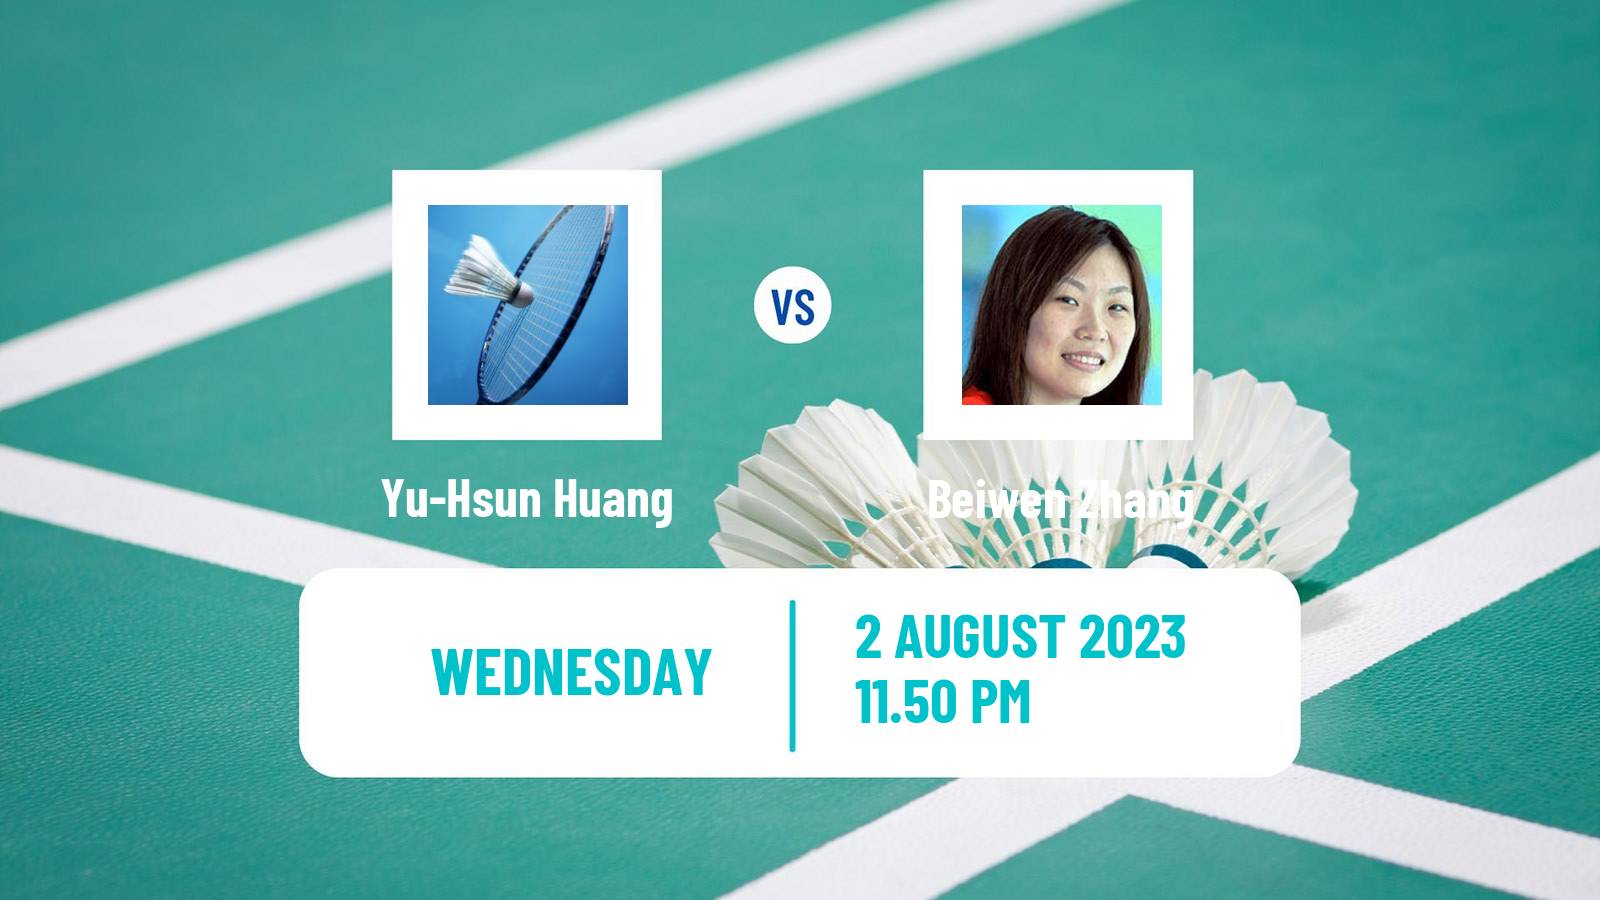 Badminton BWF World Tour Australian Open Women Yu-Hsun Huang - Beiwen Zhang